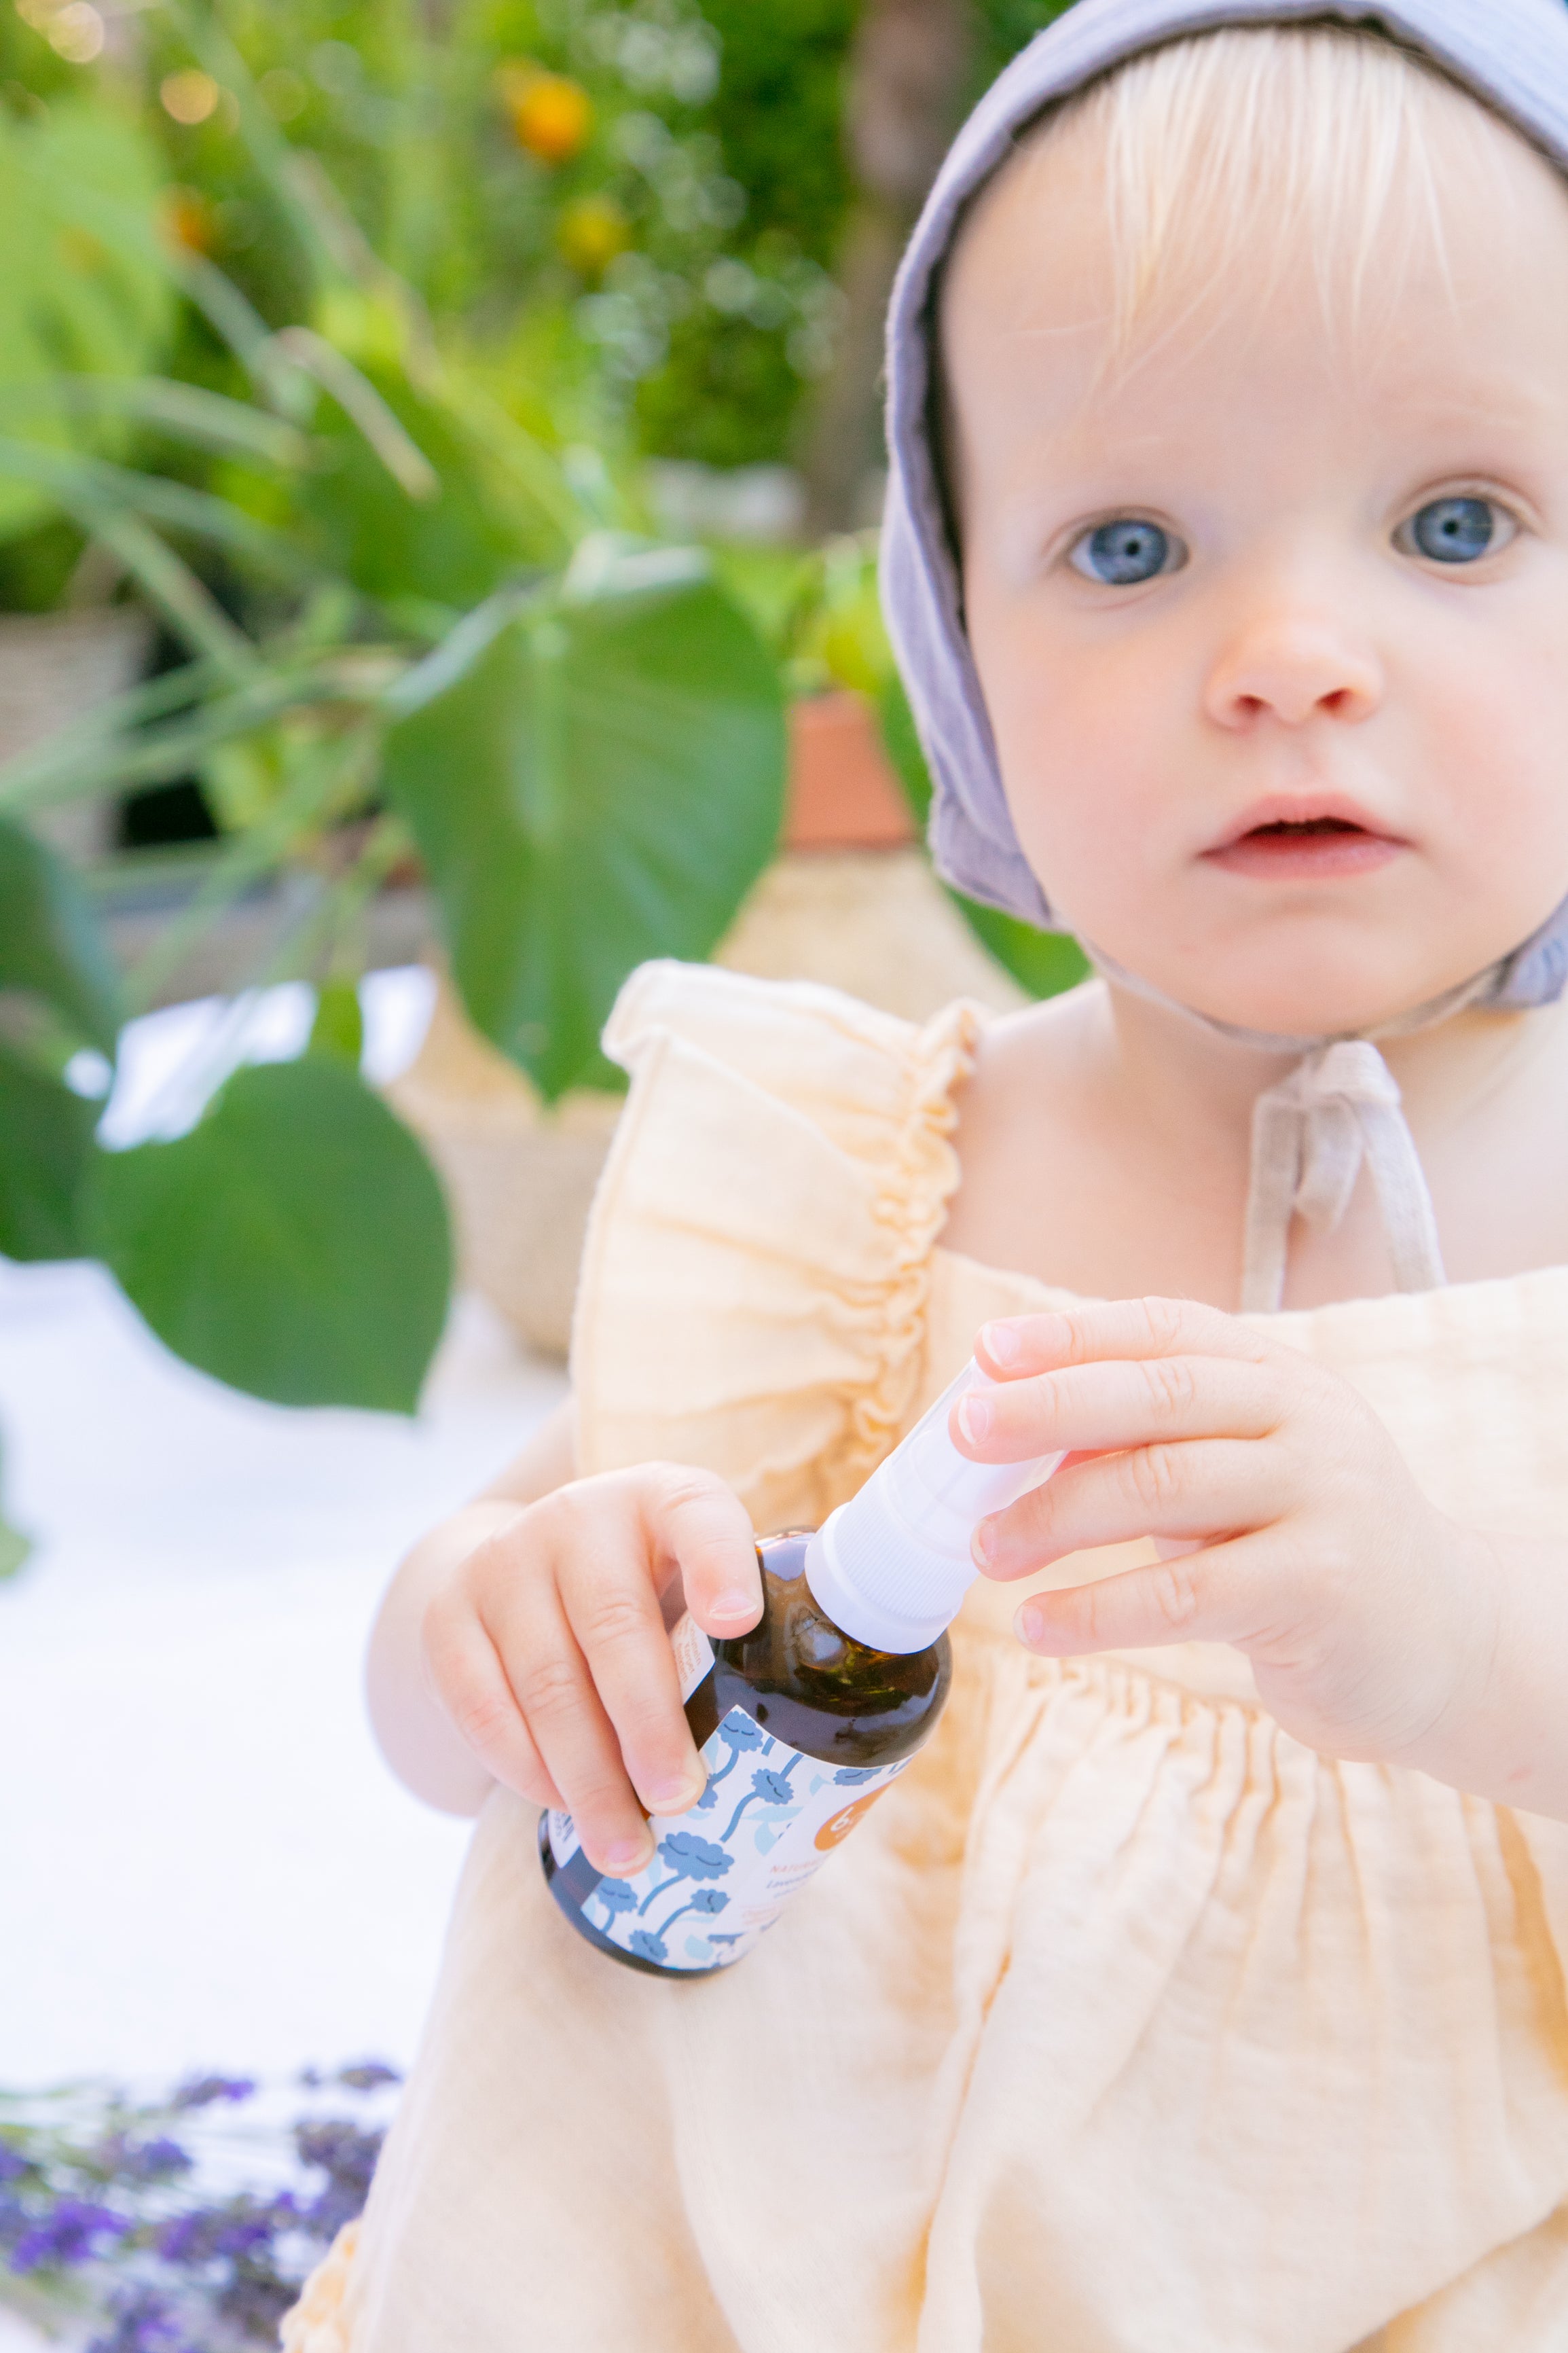 Babyduft® STAY COOL Erfrischungs- und SOS-Spray